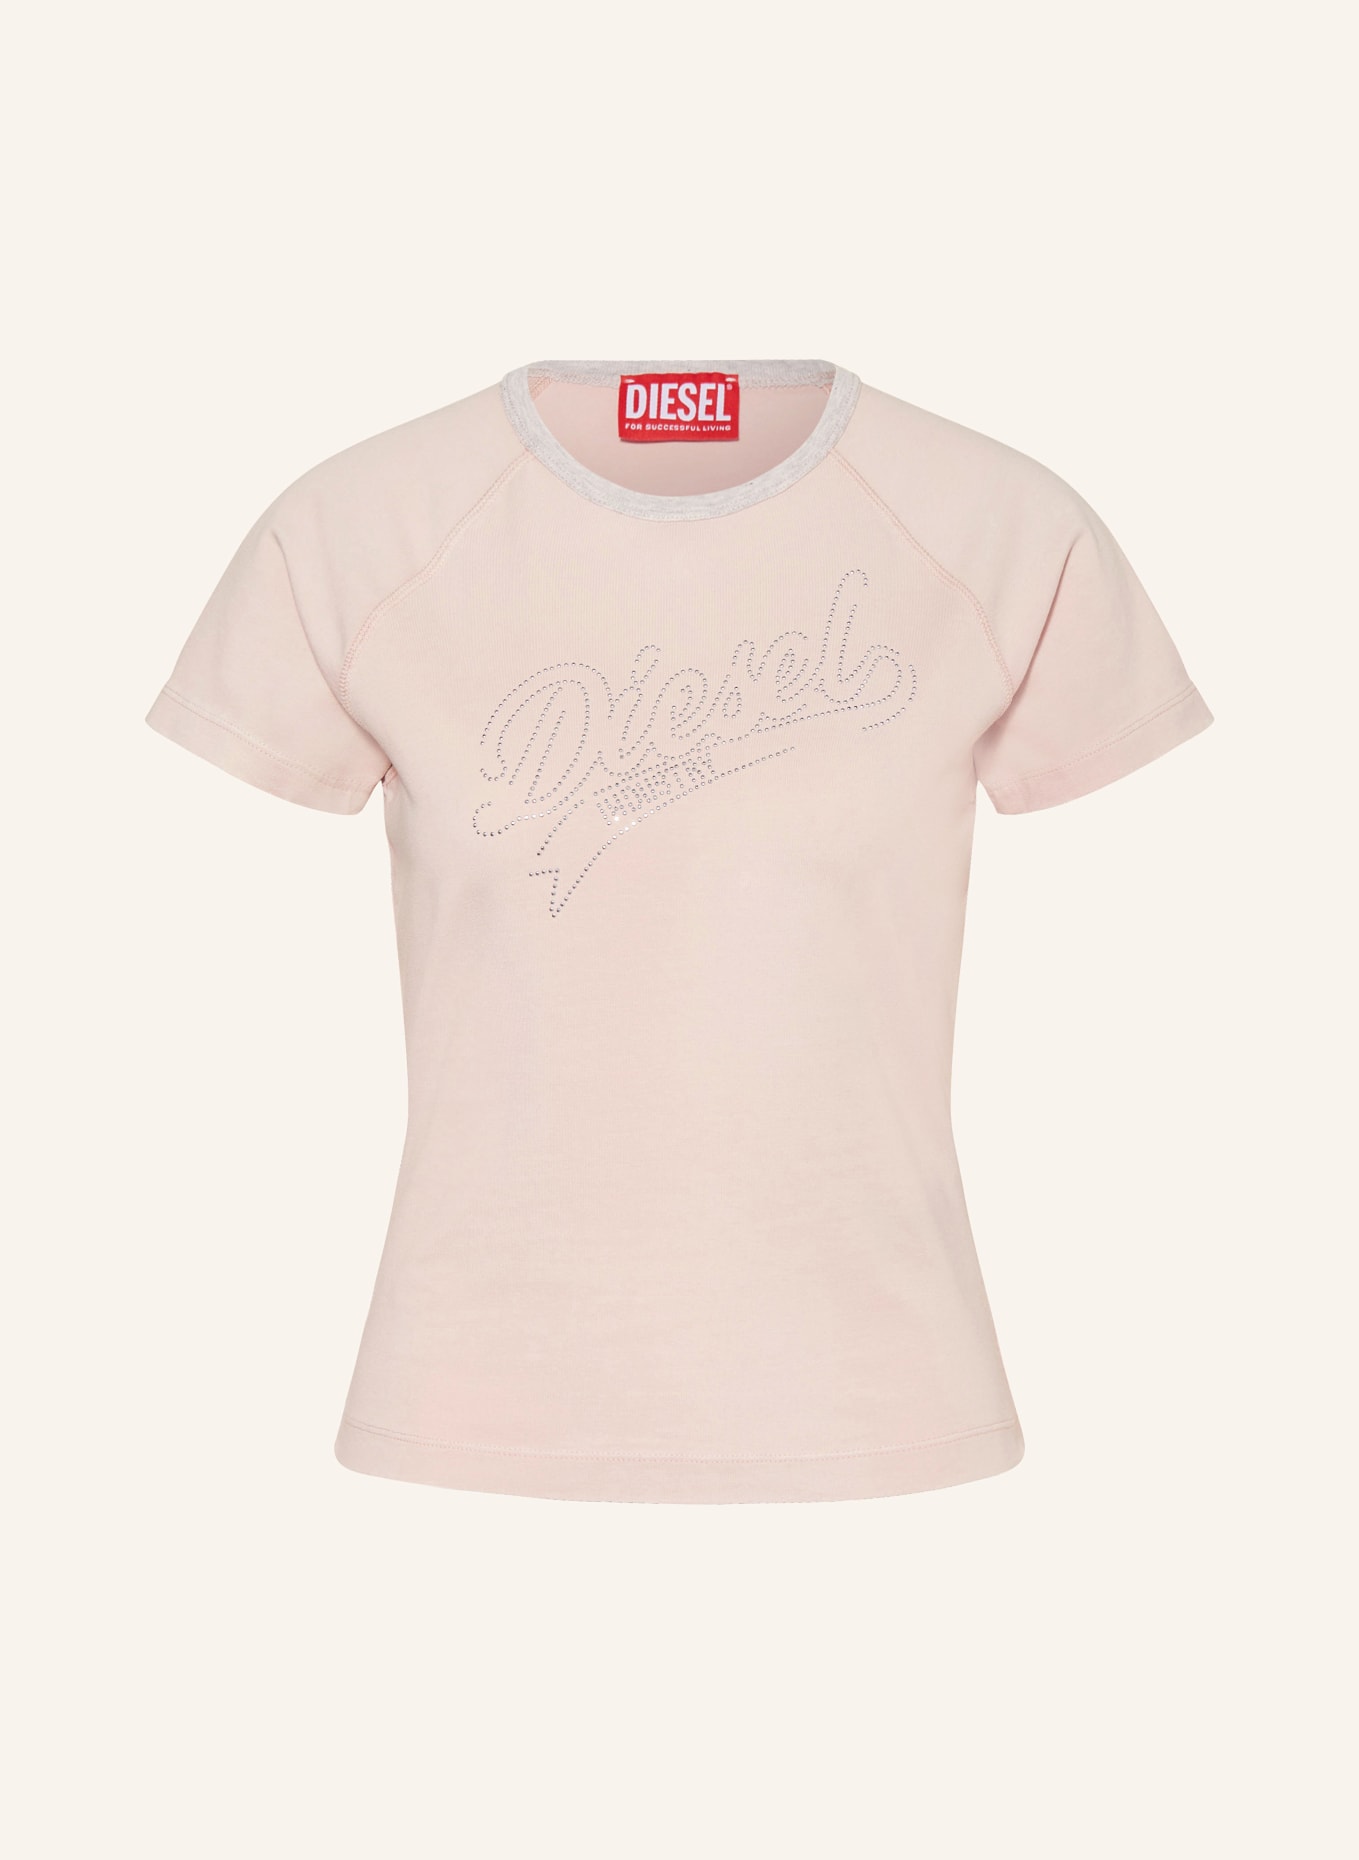 DIESEL T-Shirt T-VINCIE mit Pailletten, Farbe: NUDE/ SILBER (Bild 1)